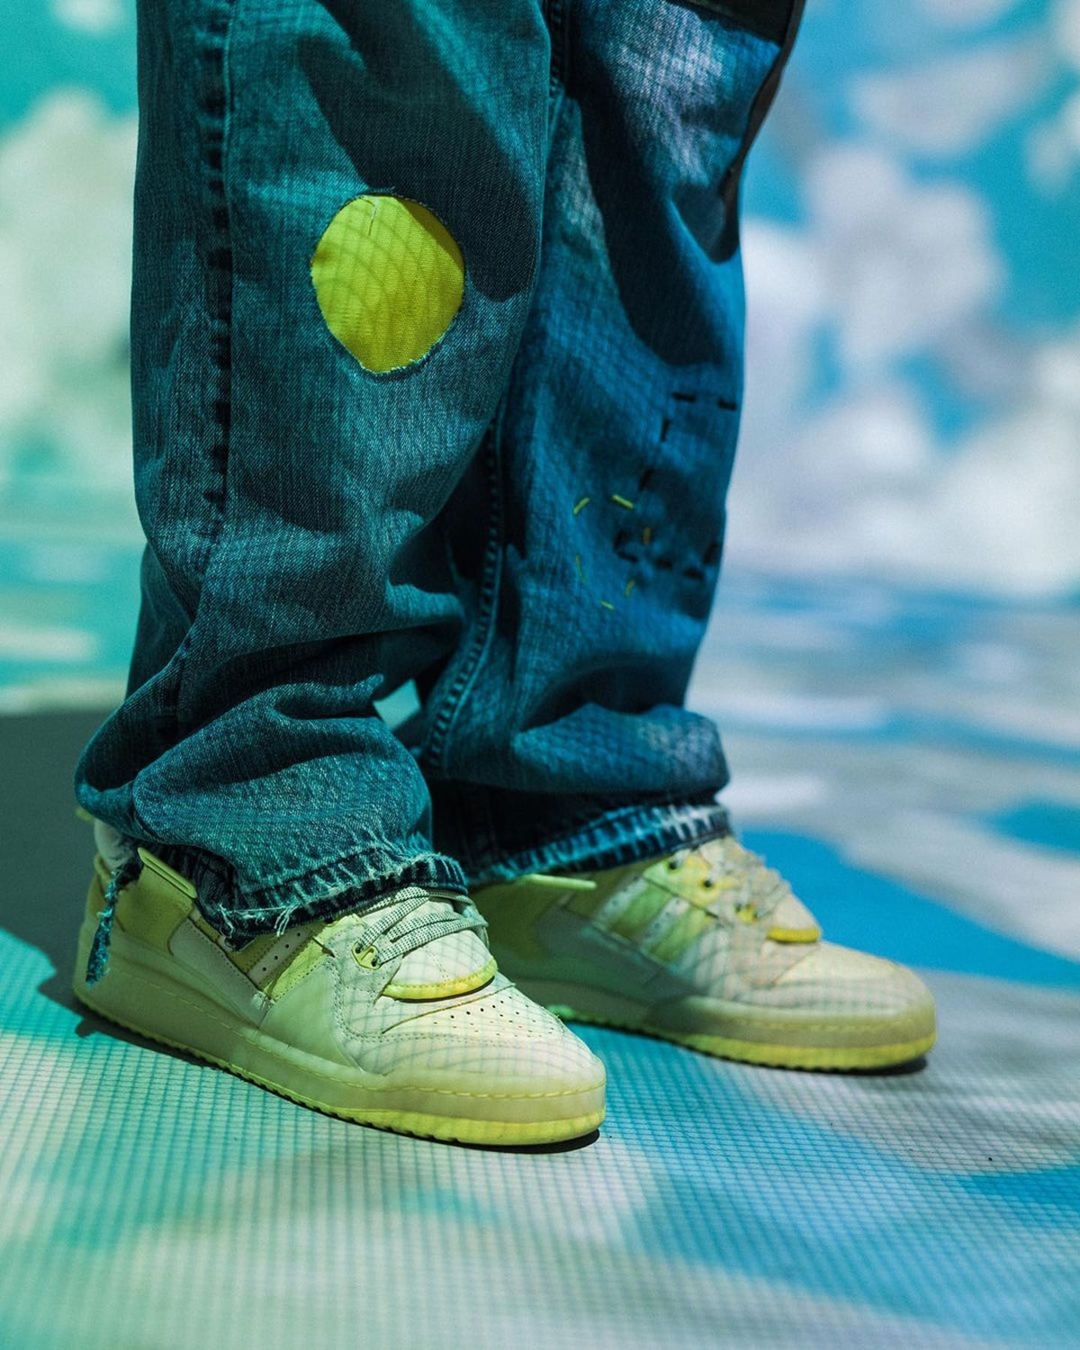 2021年 発売予定！Bad Bunny × adidas Originals FORUM BUCKLE LOW "Yellow" (バッド・バニー アディダス オリジナルス フォーラム バックル ロー "イエロー") [GW5021]